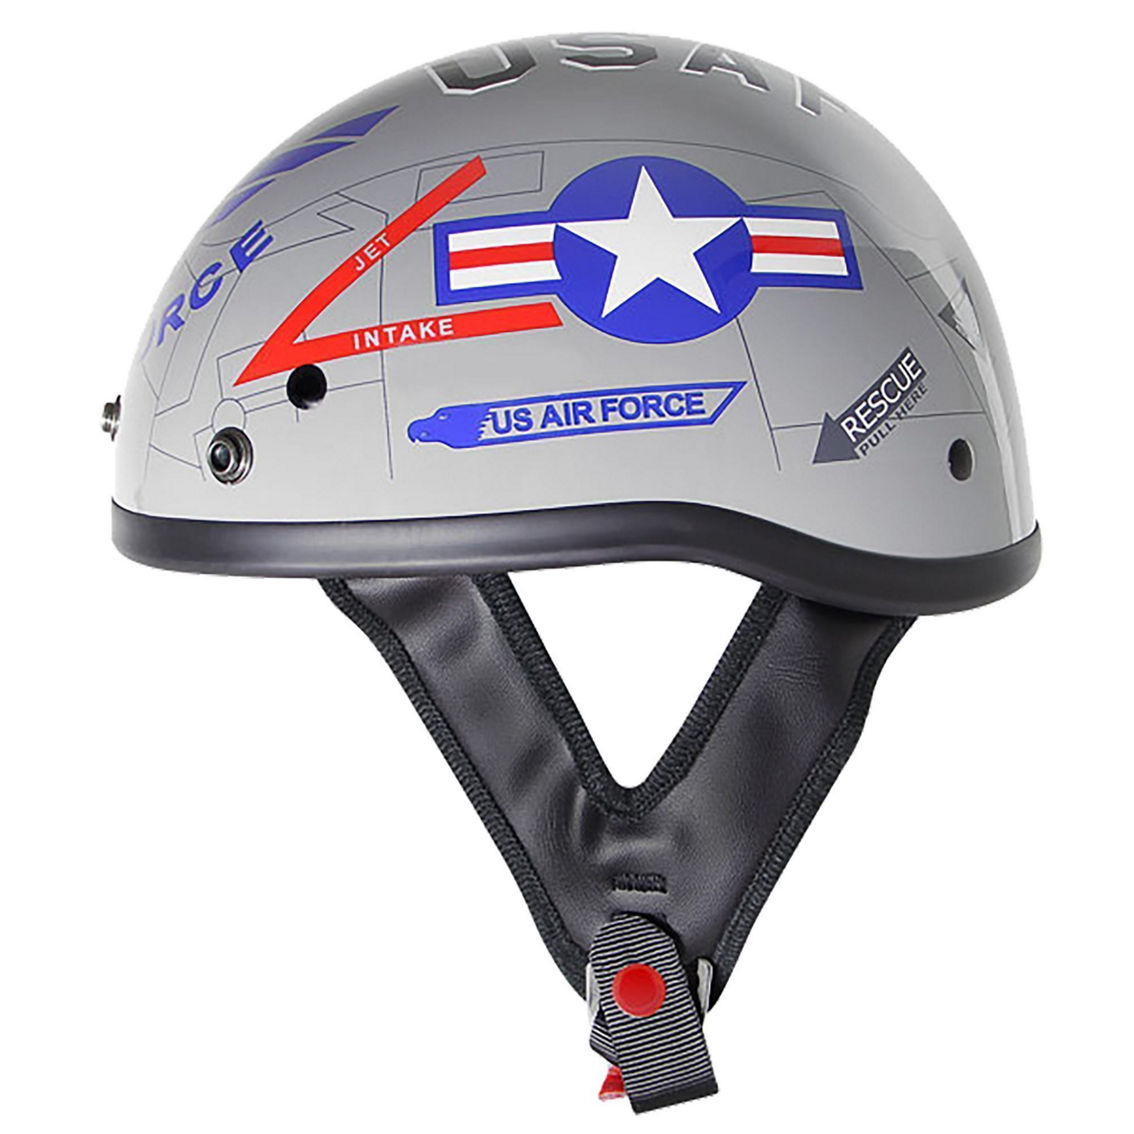 US Air Force Motorcycle Helmet - Image 2 of 2